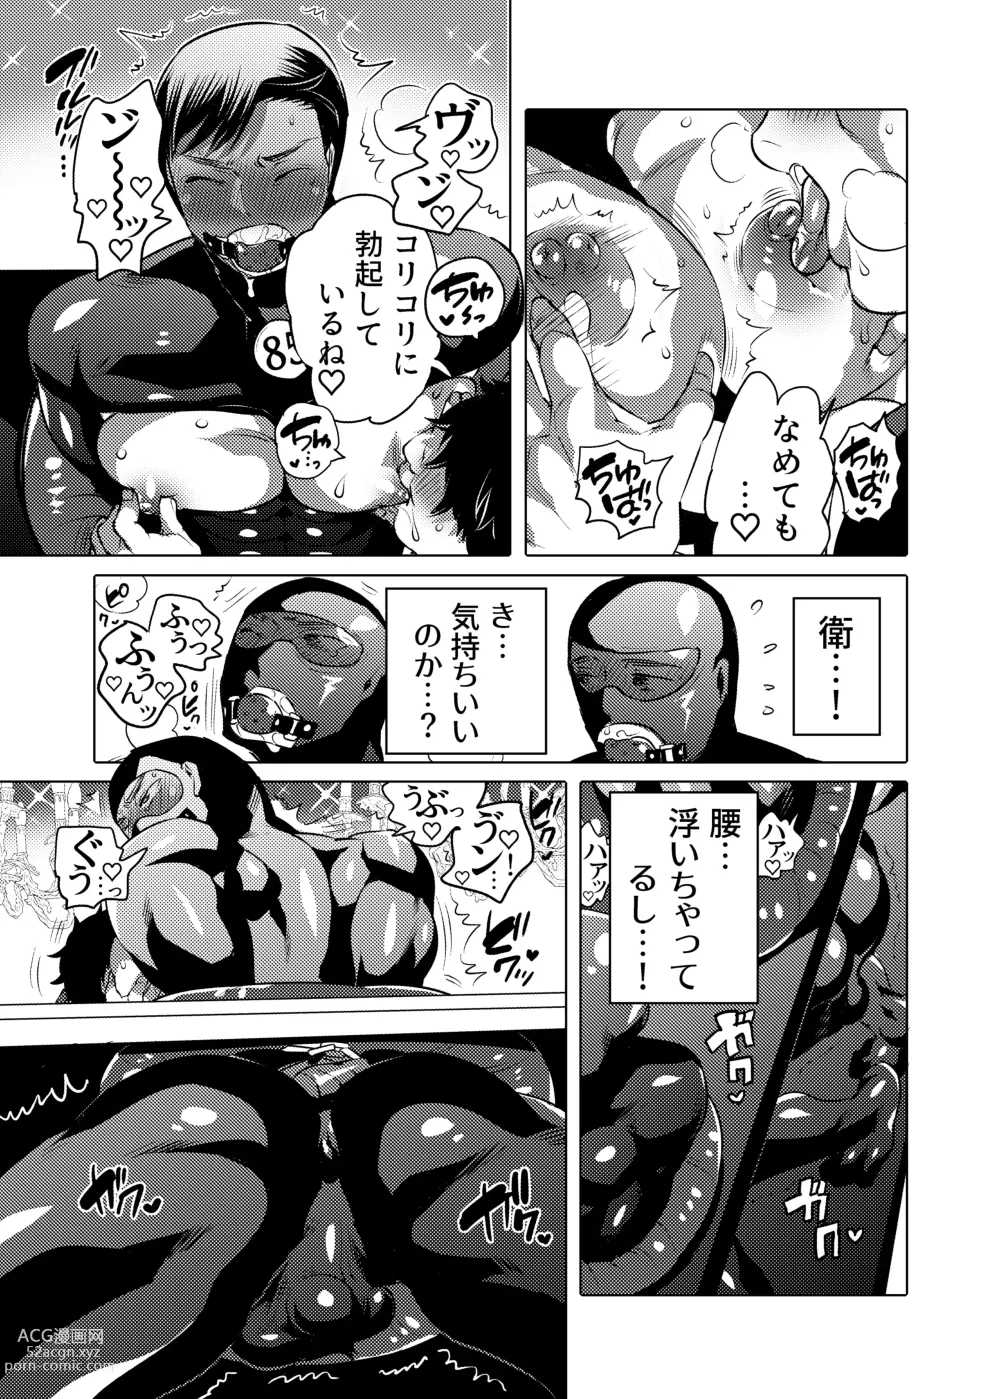 Page 7 of doujinshi Ochichi Hinpyoukai